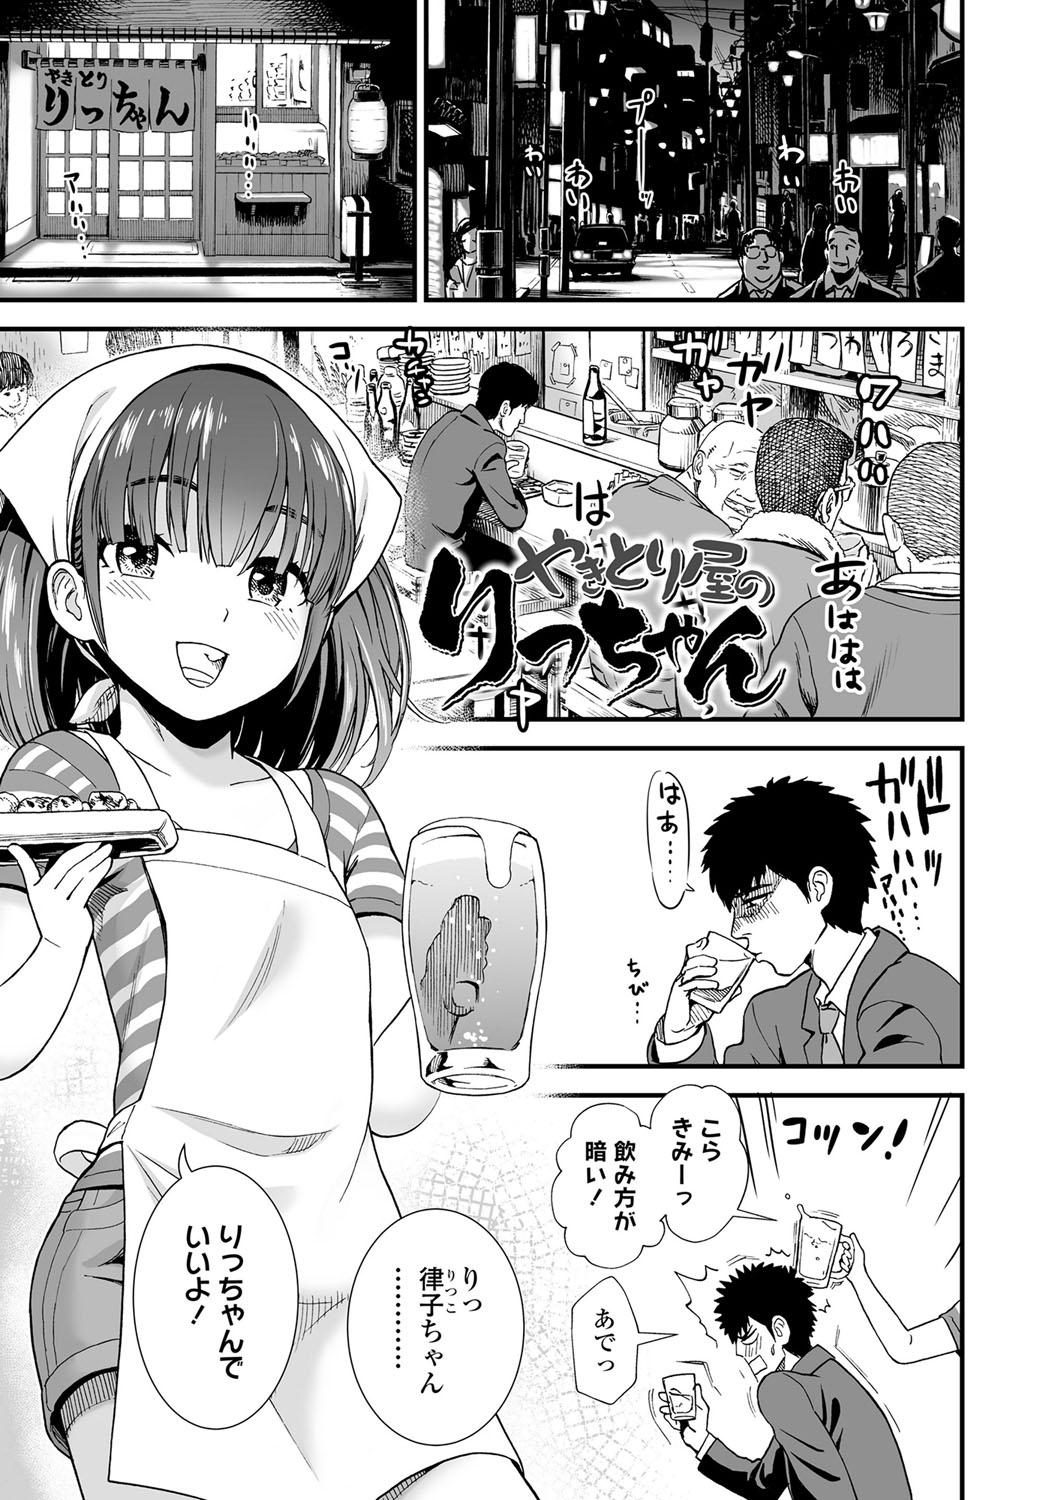 Cogiendo Ore wa Kuzu dakara koso Sukuwareru Kenri ga Aru! Behind - Page 6